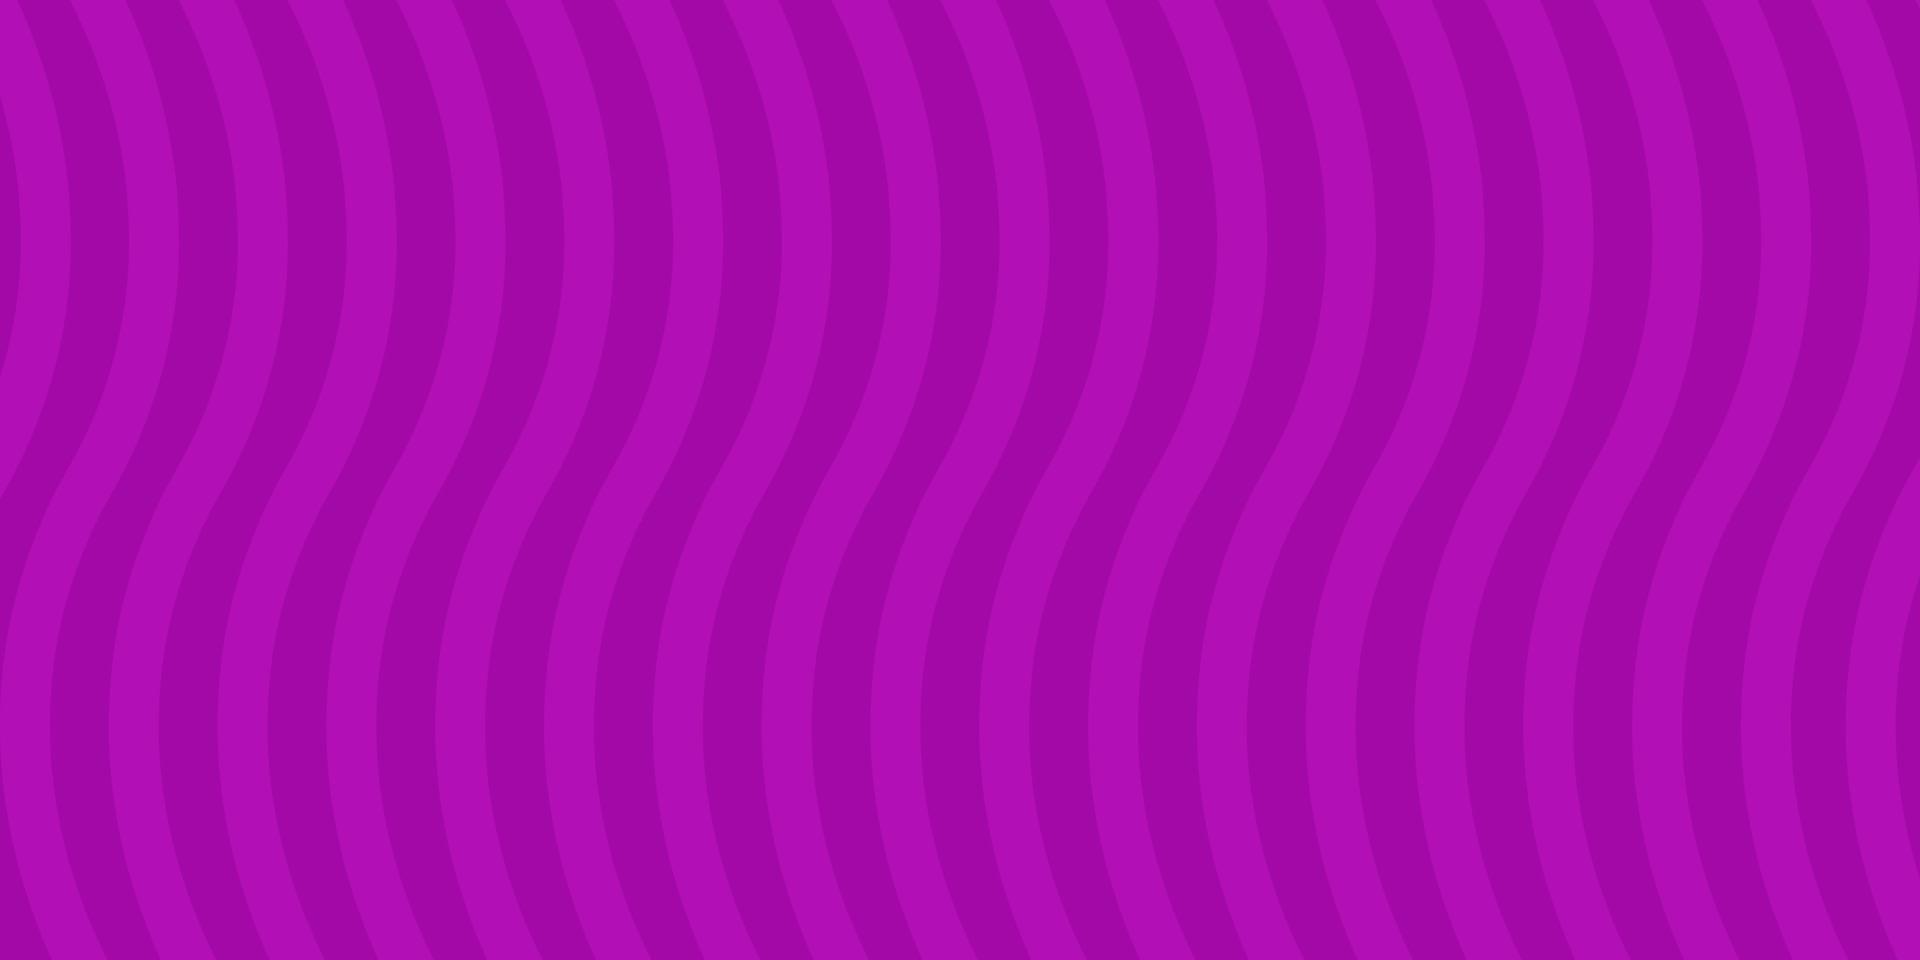 Wellenlinienmuster des lila Hintergrundes vektor